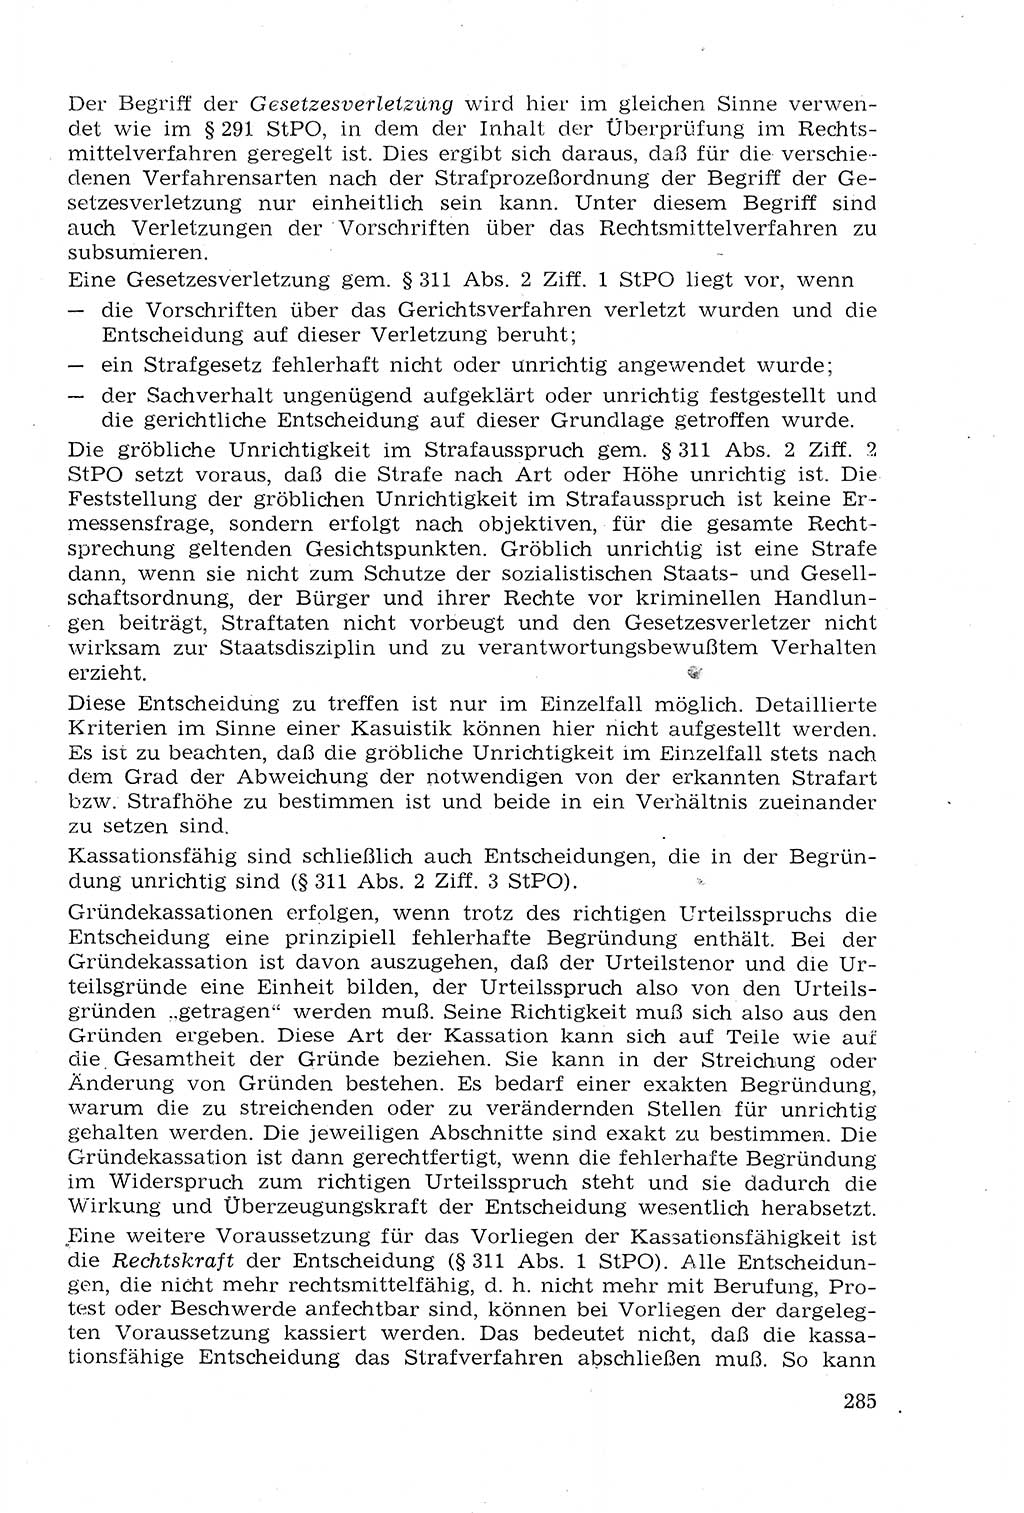 Strafprozeßrecht der DDR (Deutsche Demokratische Republik), Lehrmaterial 1969, Seite 285 (Strafprozeßr. DDR Lehrmat. 1969, S. 285)